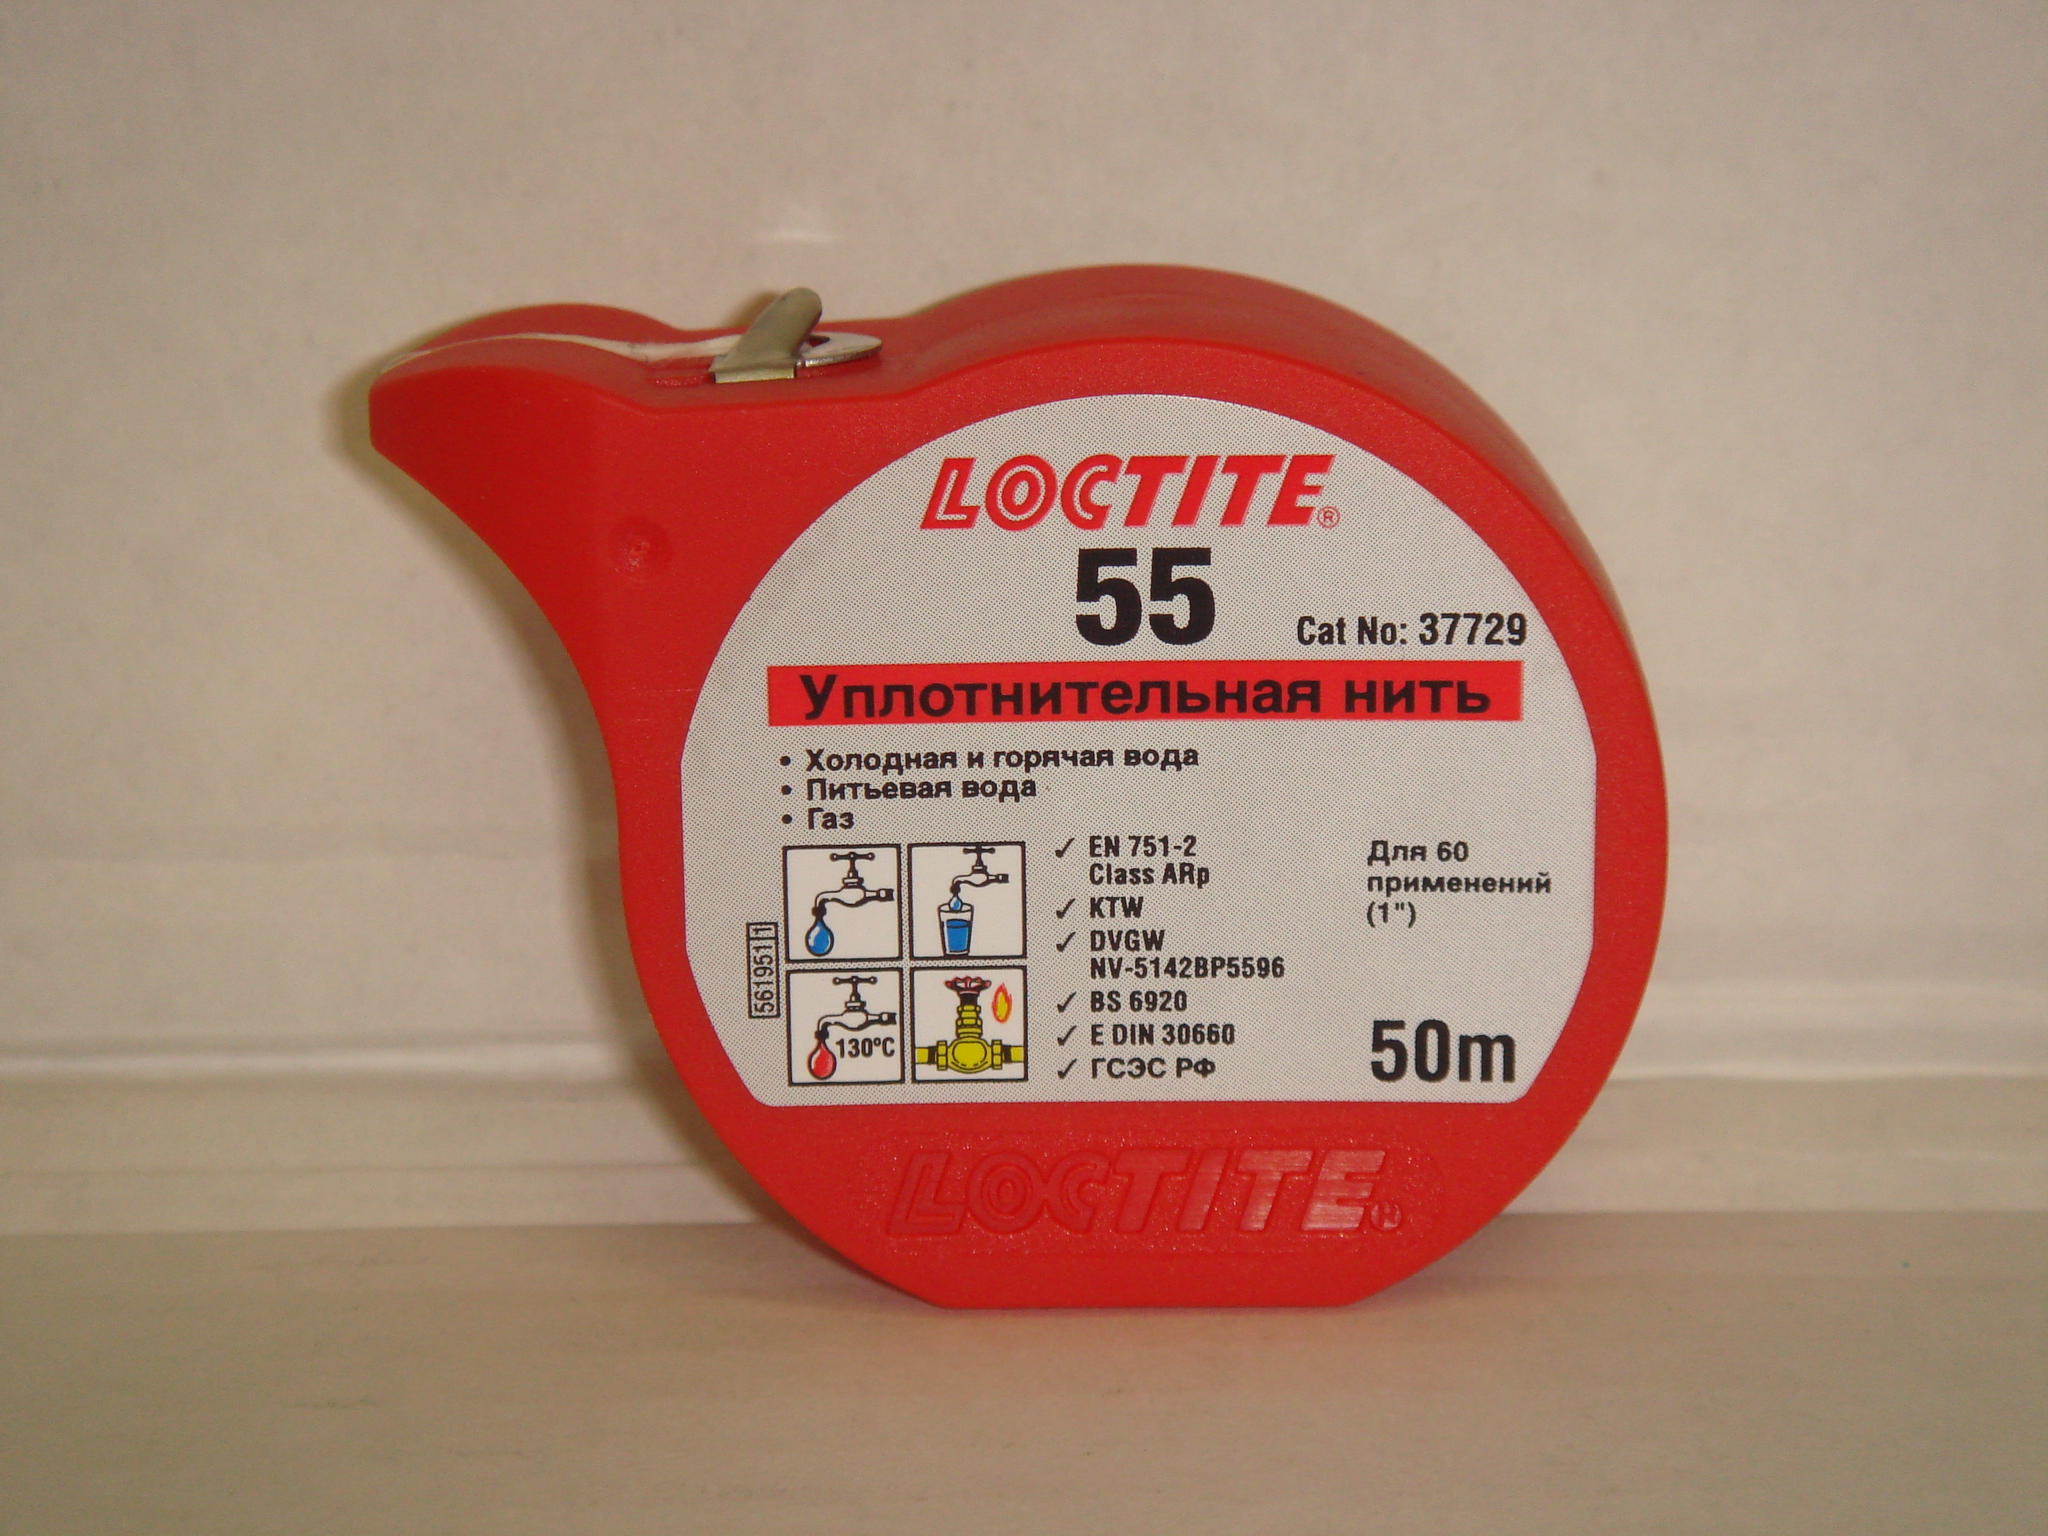 Loctite 523277 Герметизирующая нить для газа и питьвой воды, 50 м.